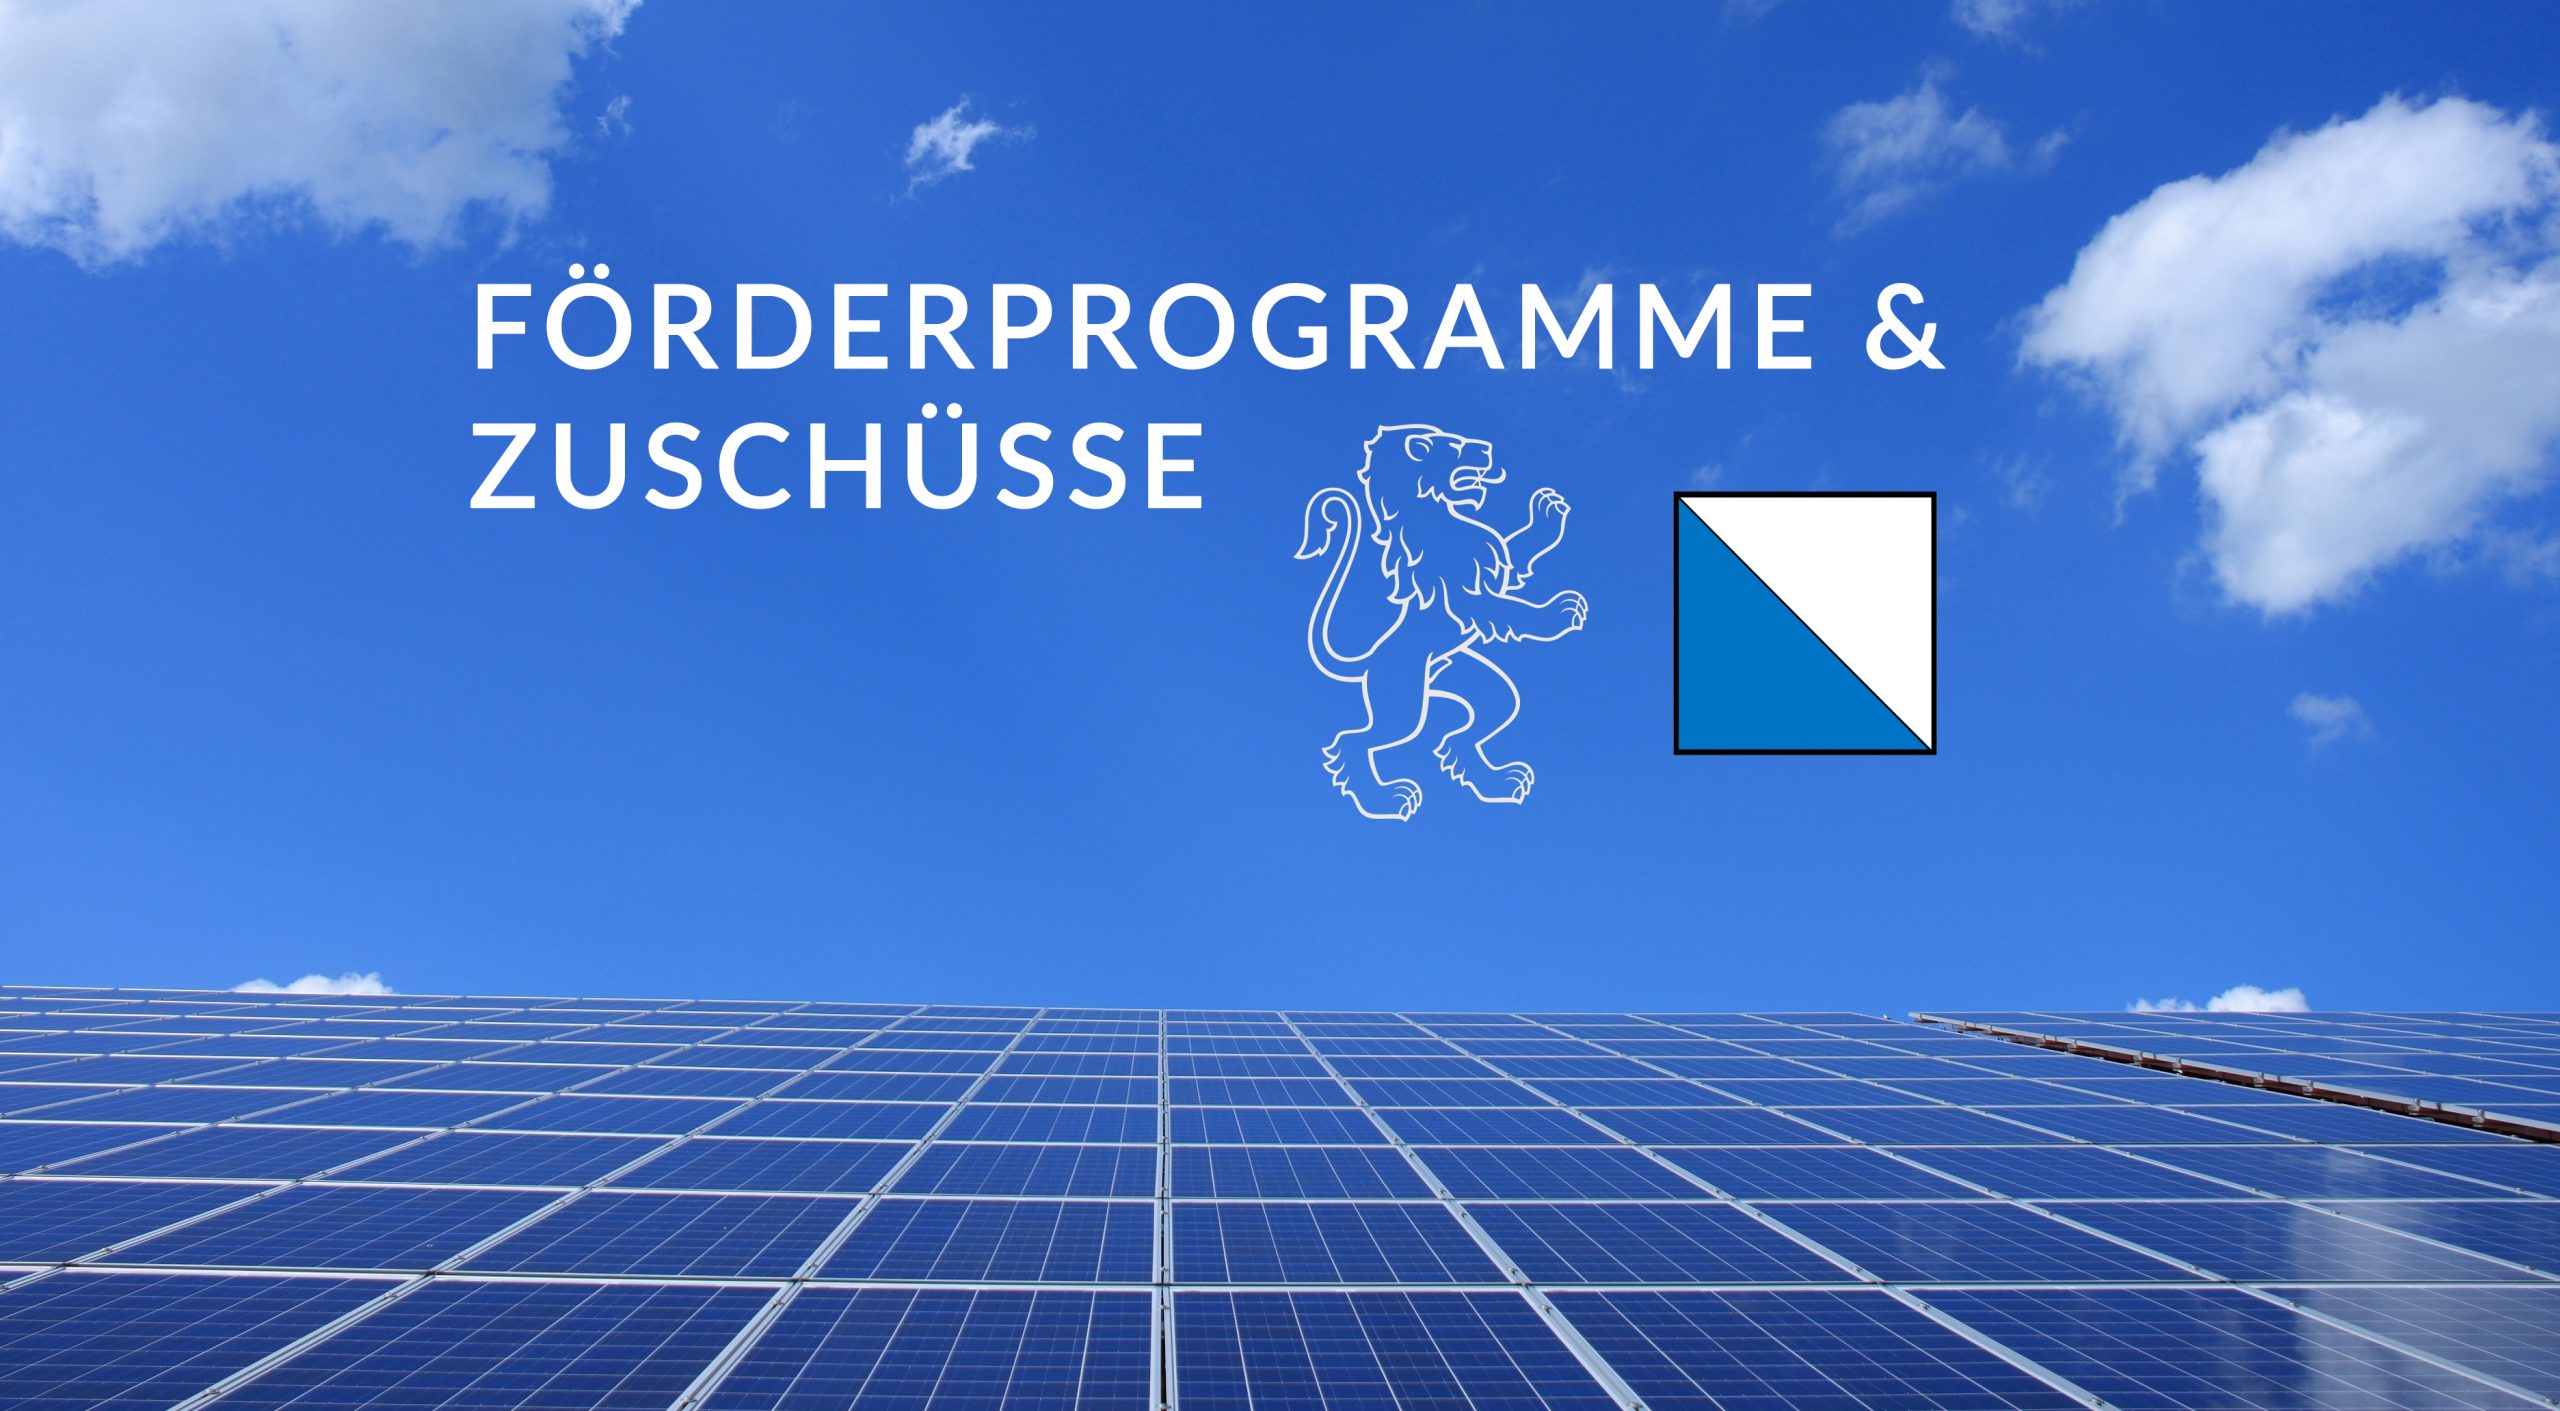 Solarenergie in Zürich – so profitieren Sie von Förderbeiträgen und reduzieren Ihre Kosten